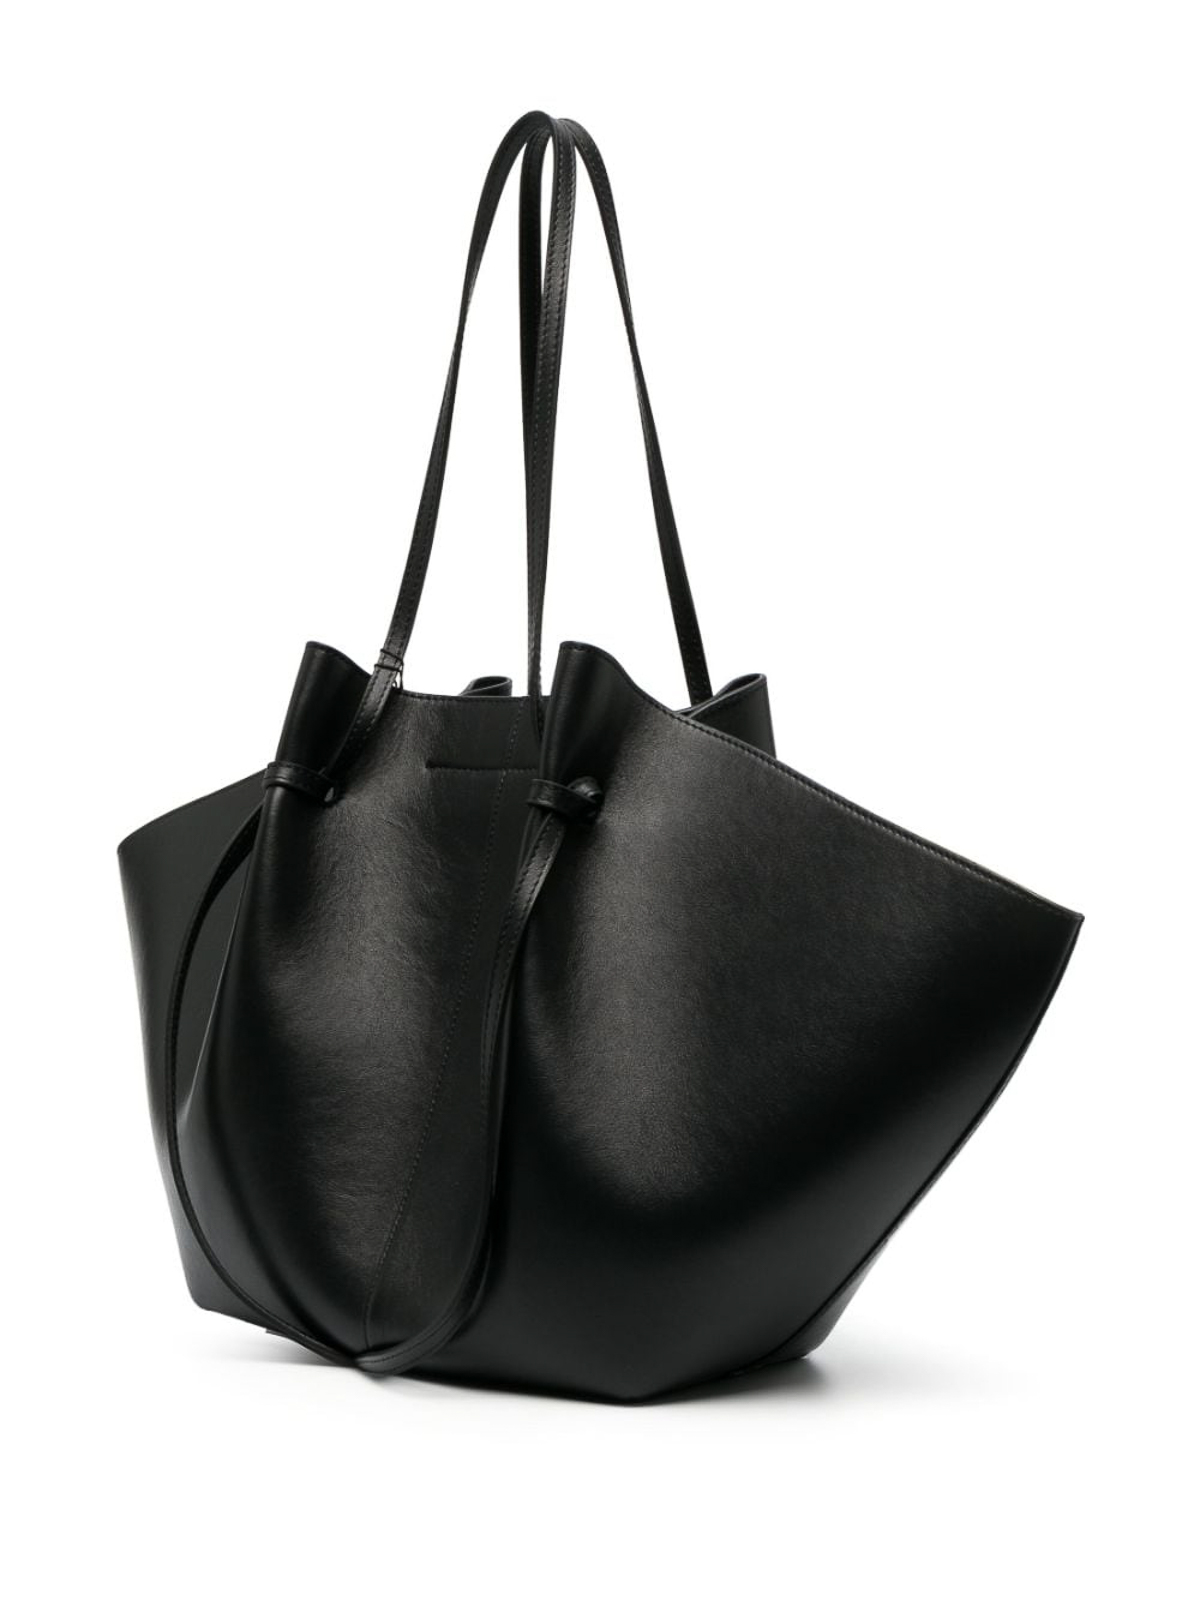 Buy Grey Handbags for Women by Mochi Online